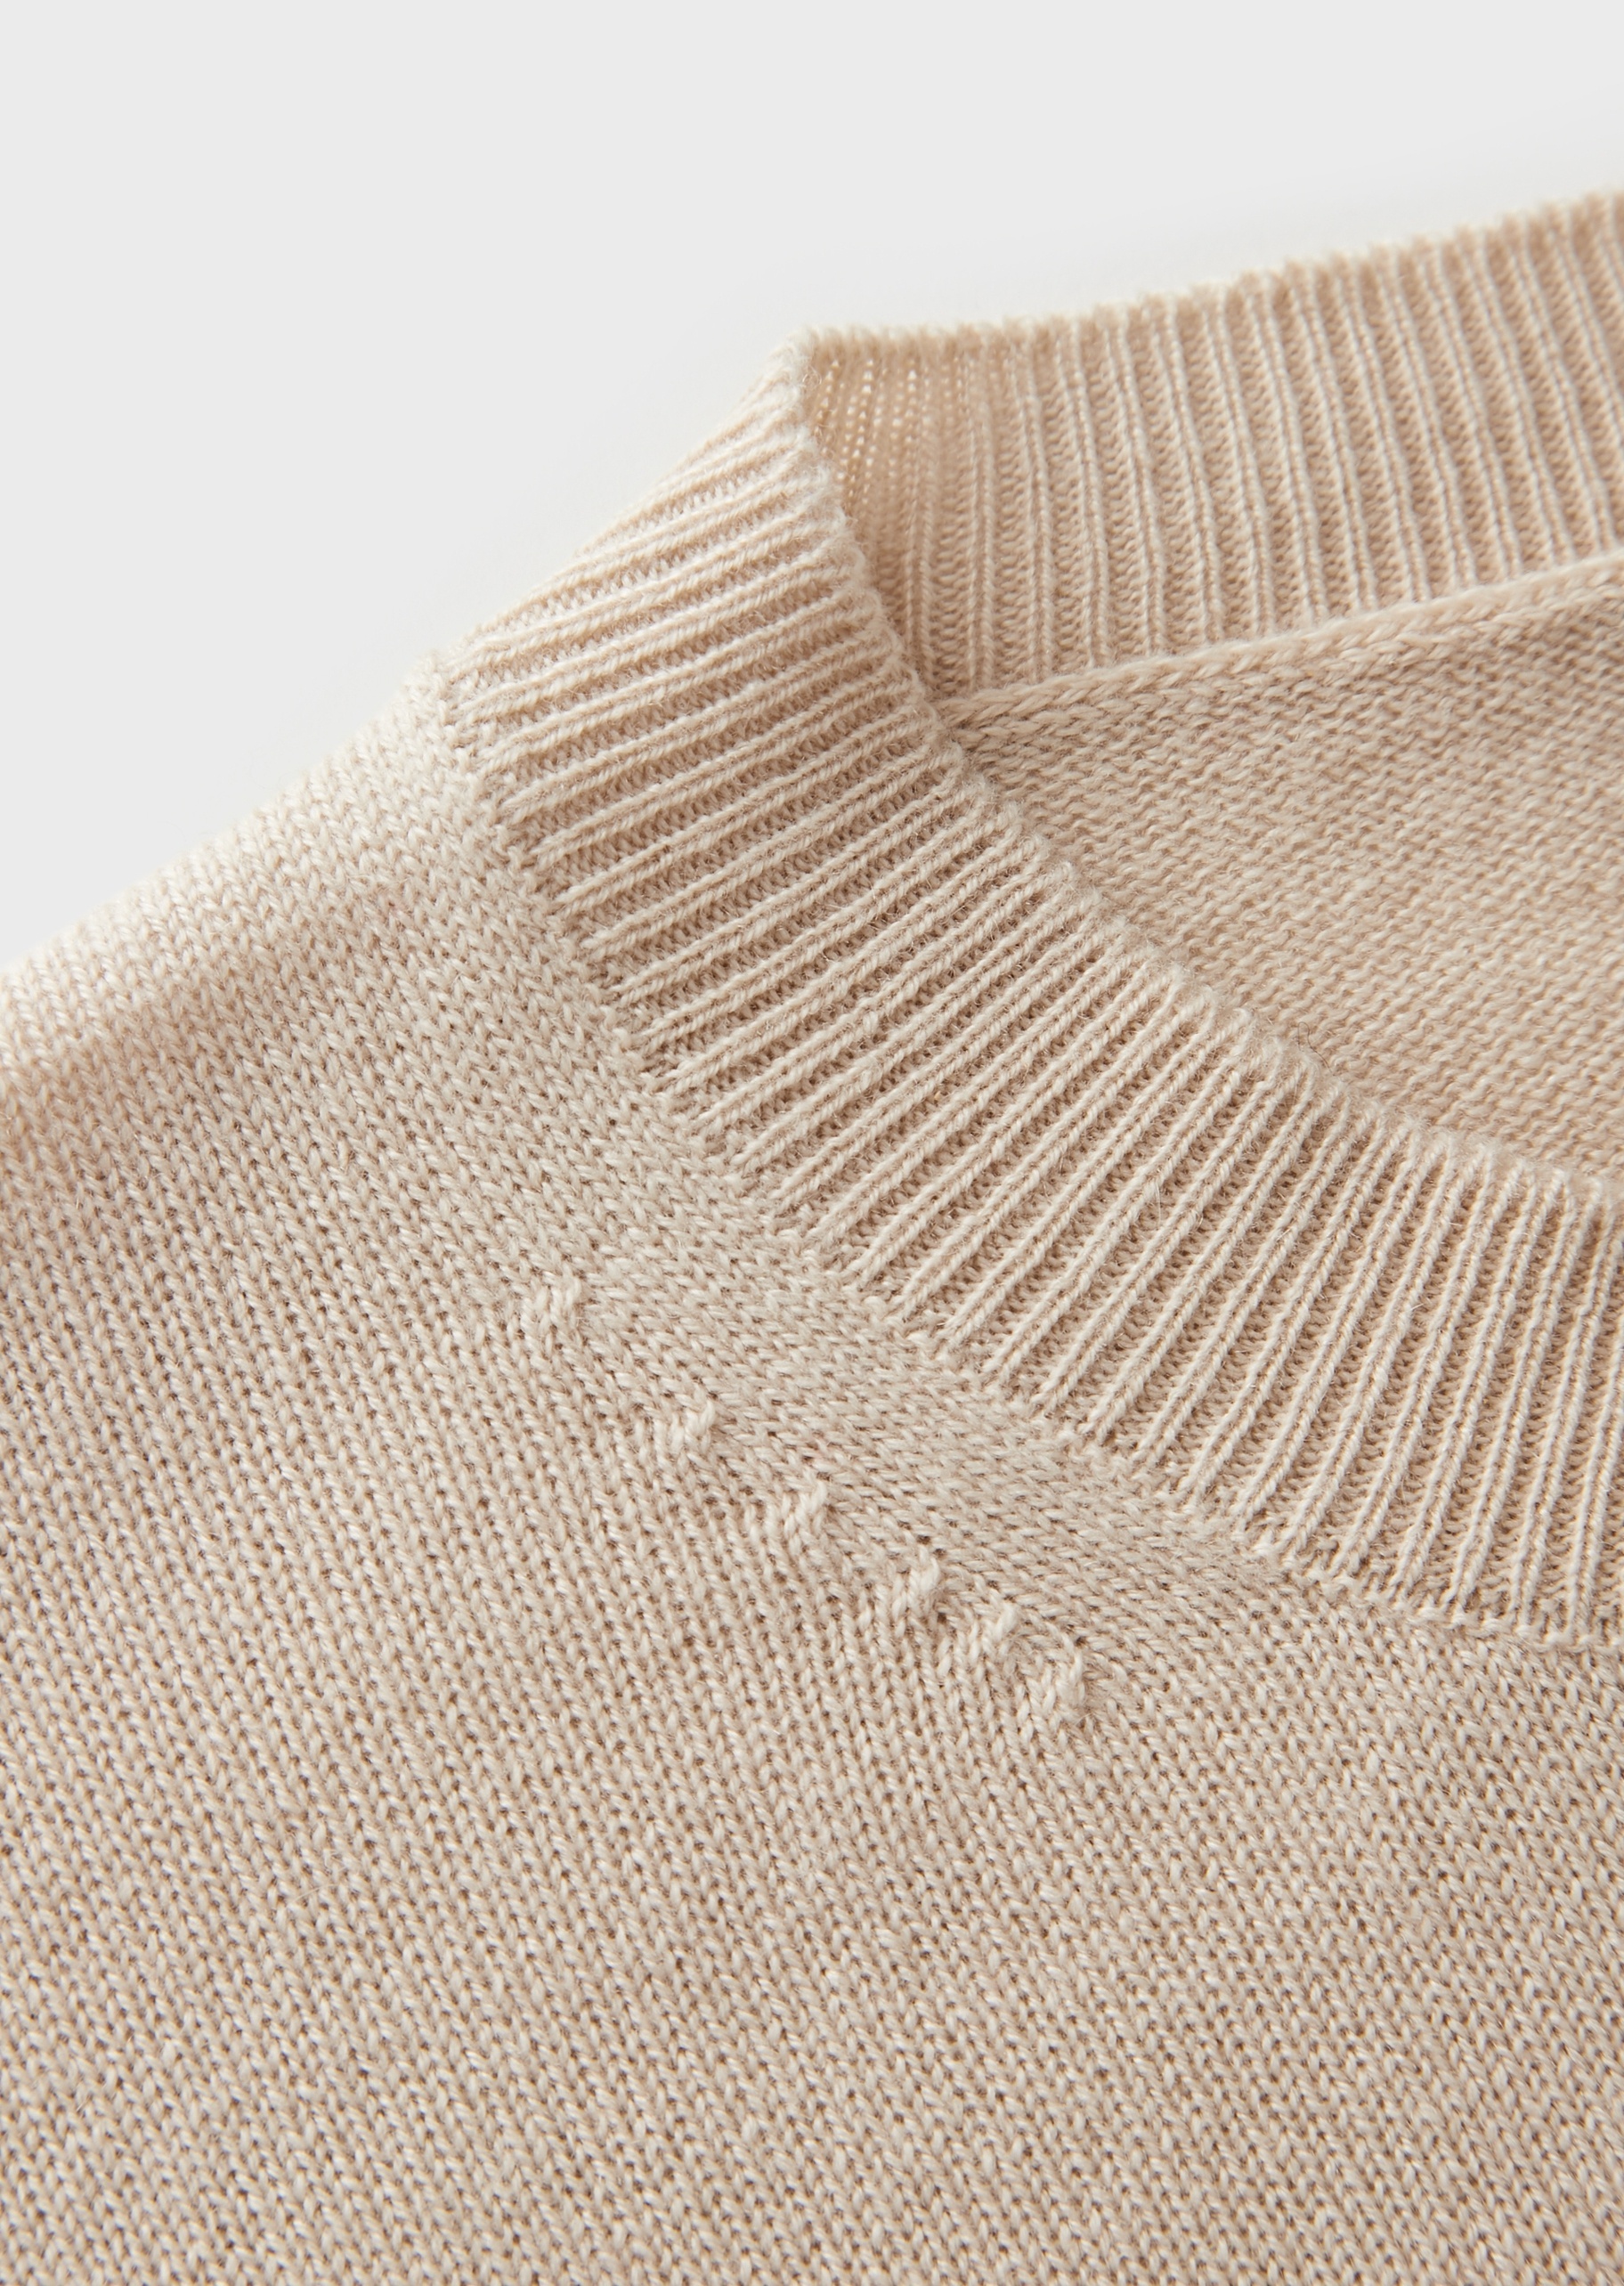 Giorgio Armani 羊绒圆领针织衫